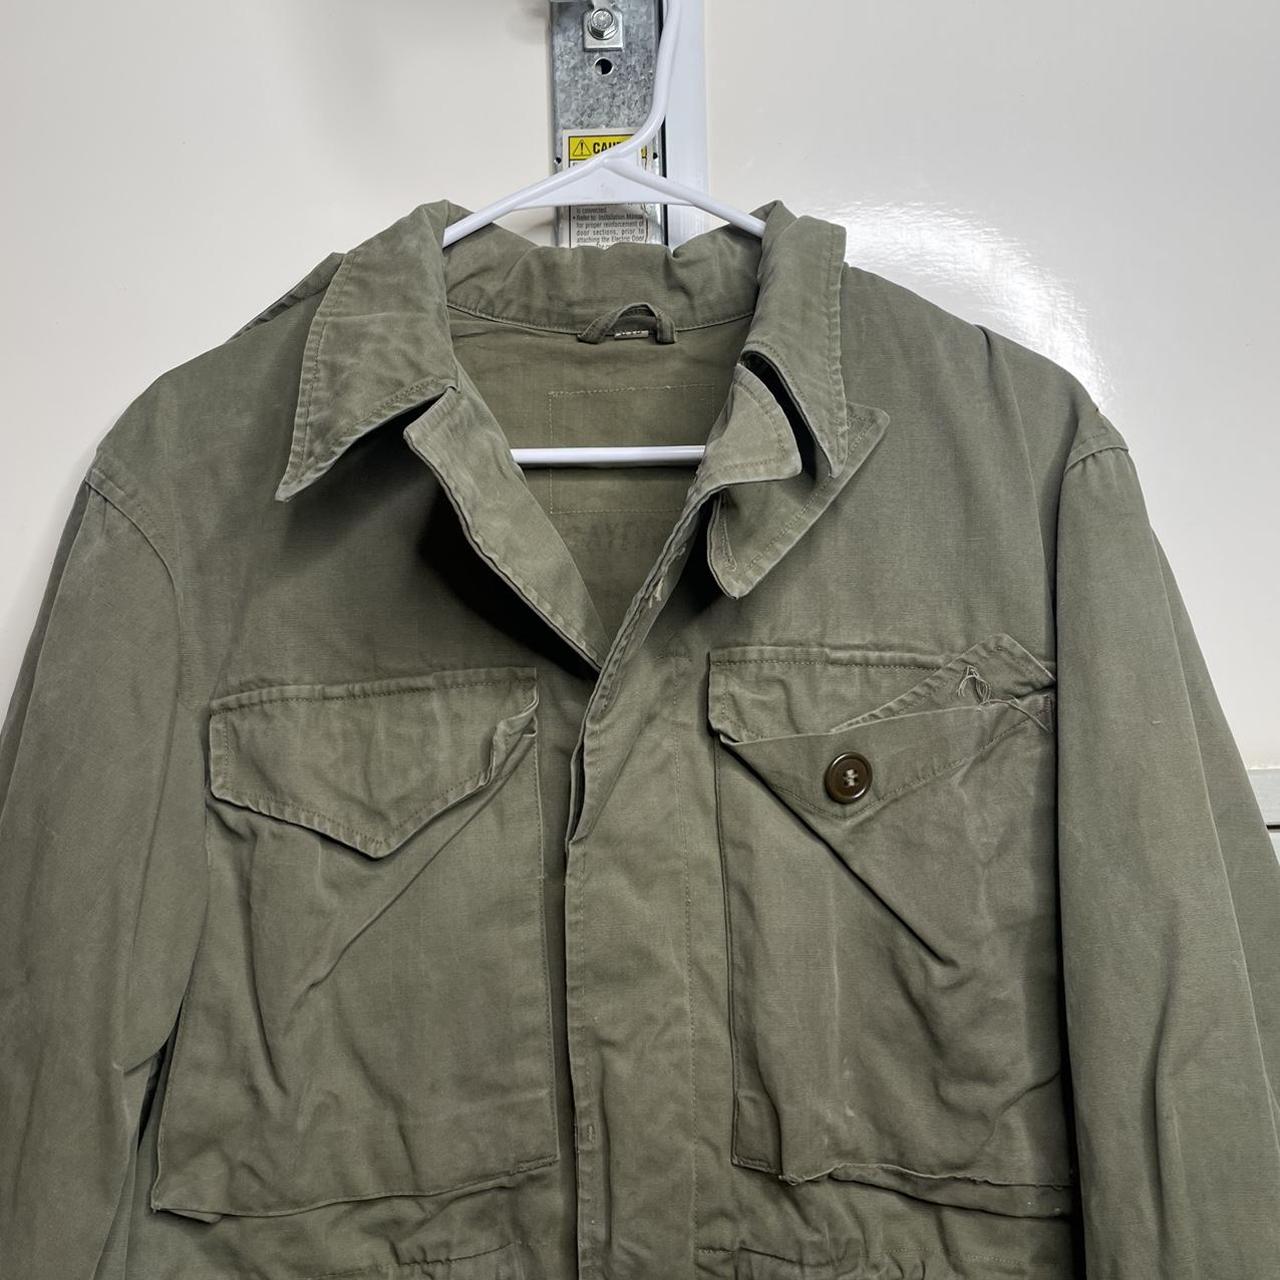 Vintage 70s Military jacket #usa #military #usmc... - Depop